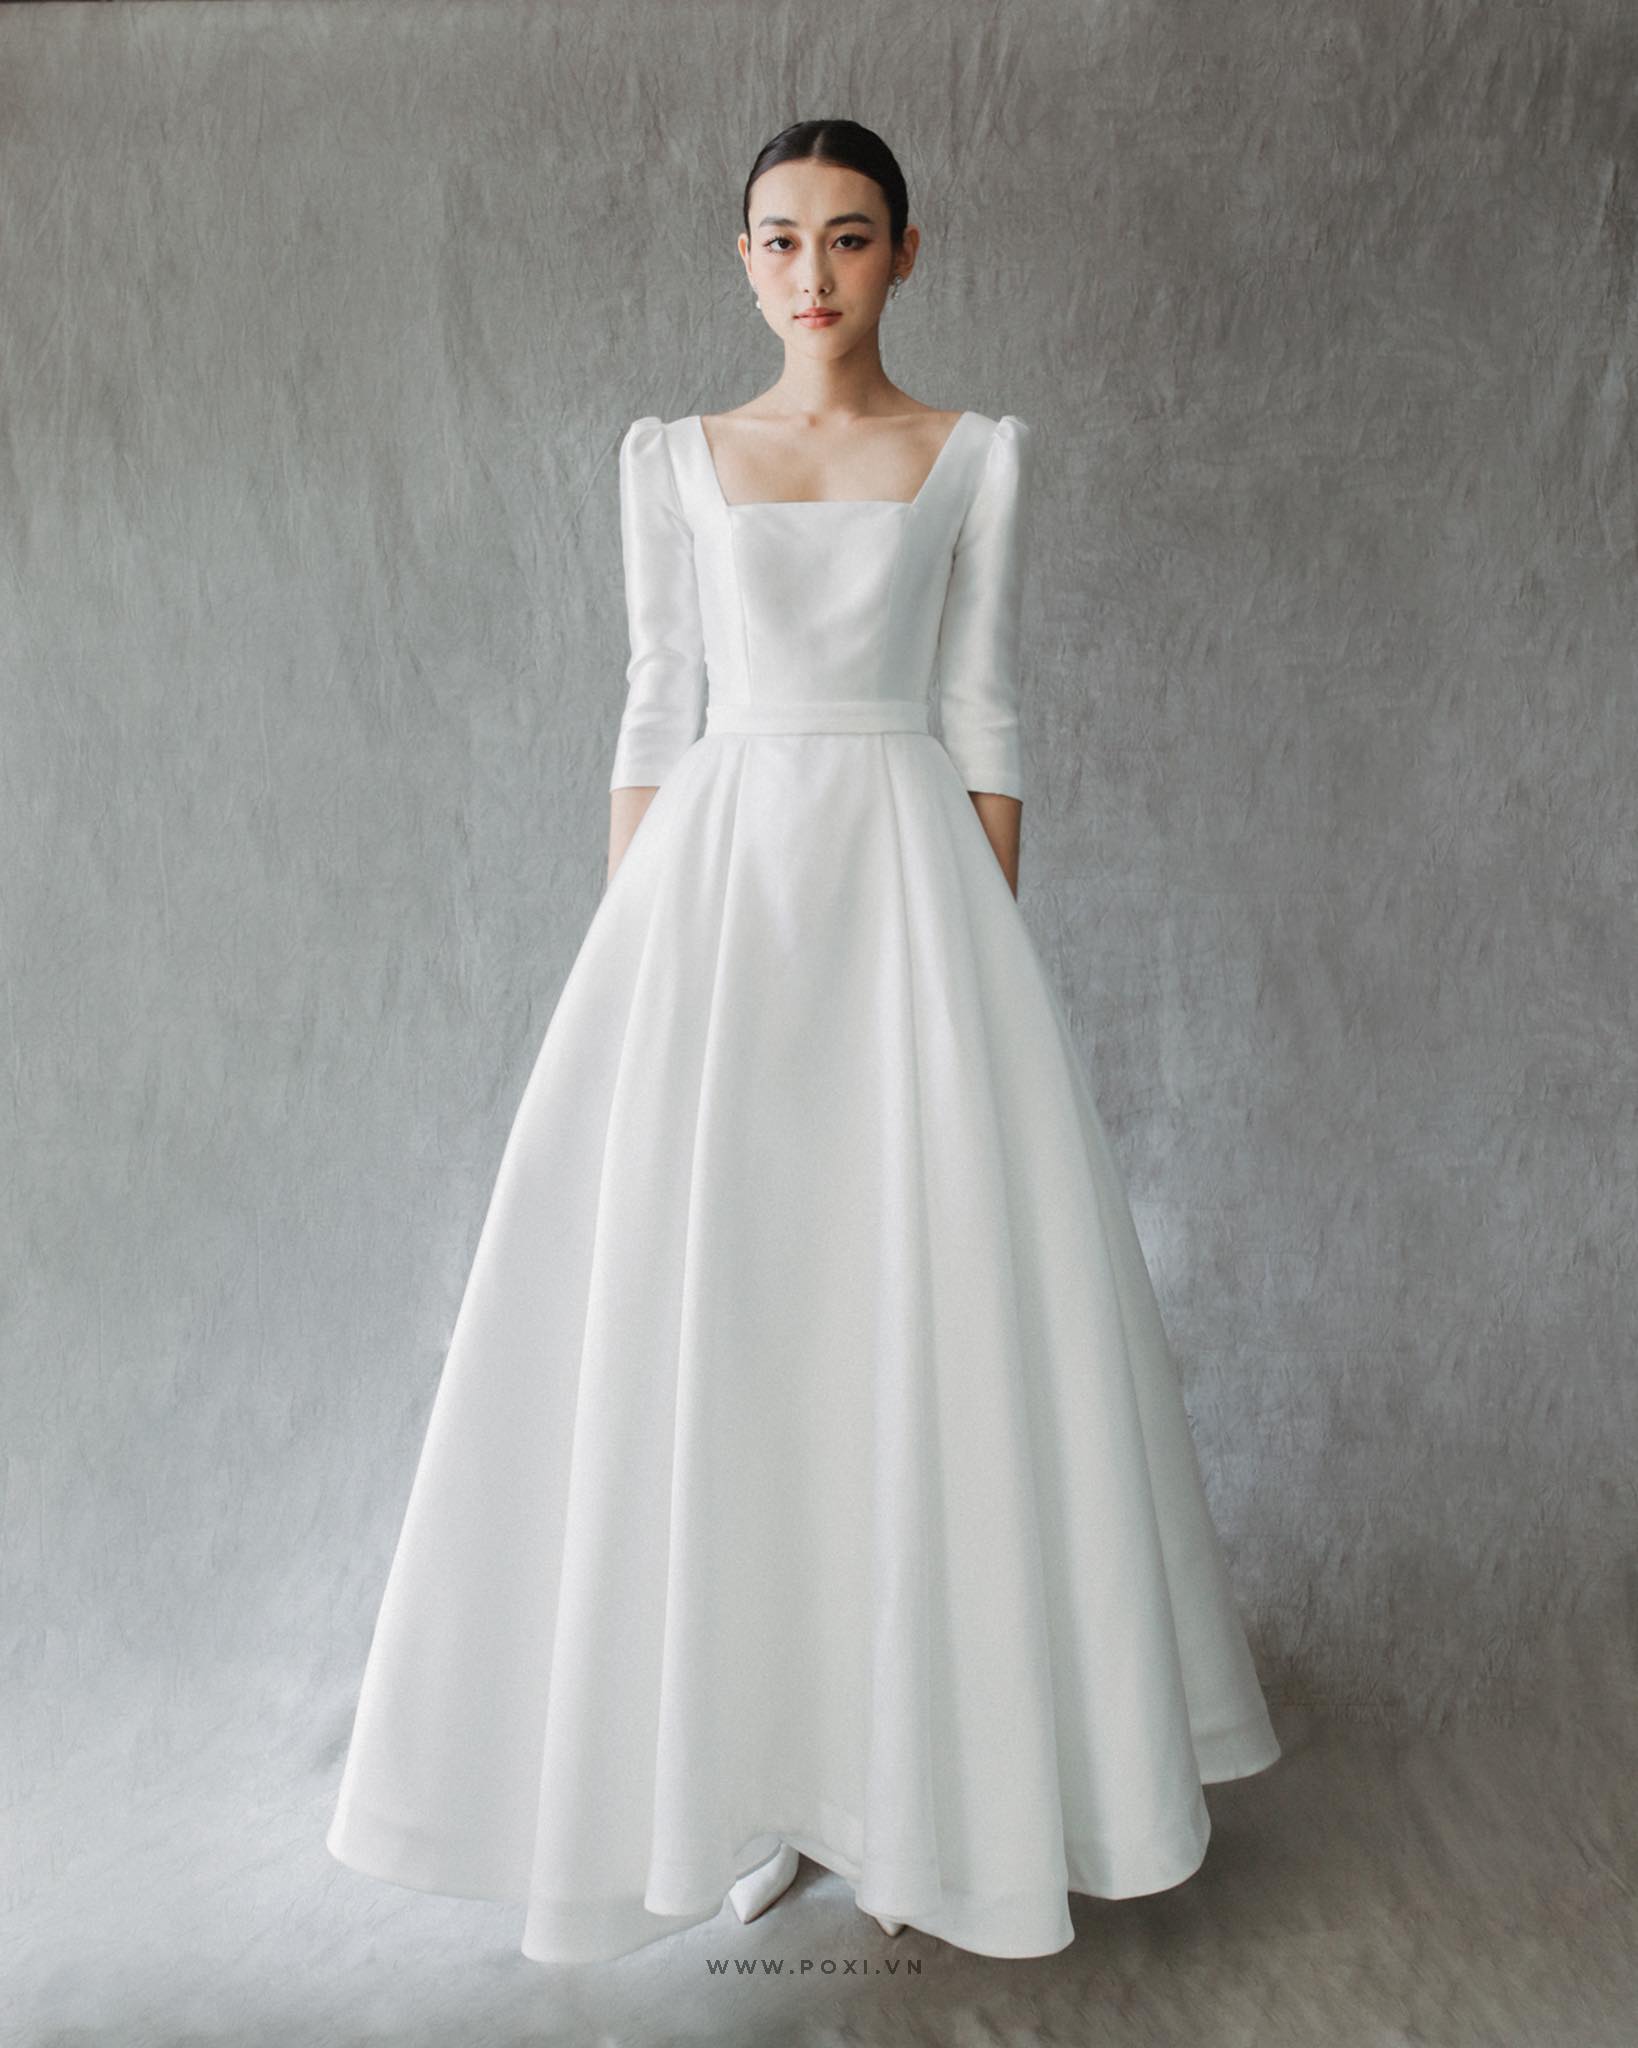 Top mẫu váy cô dâu đi bàn sang trọng và thoải mái nhất 2022 | Diễn đàn GVN